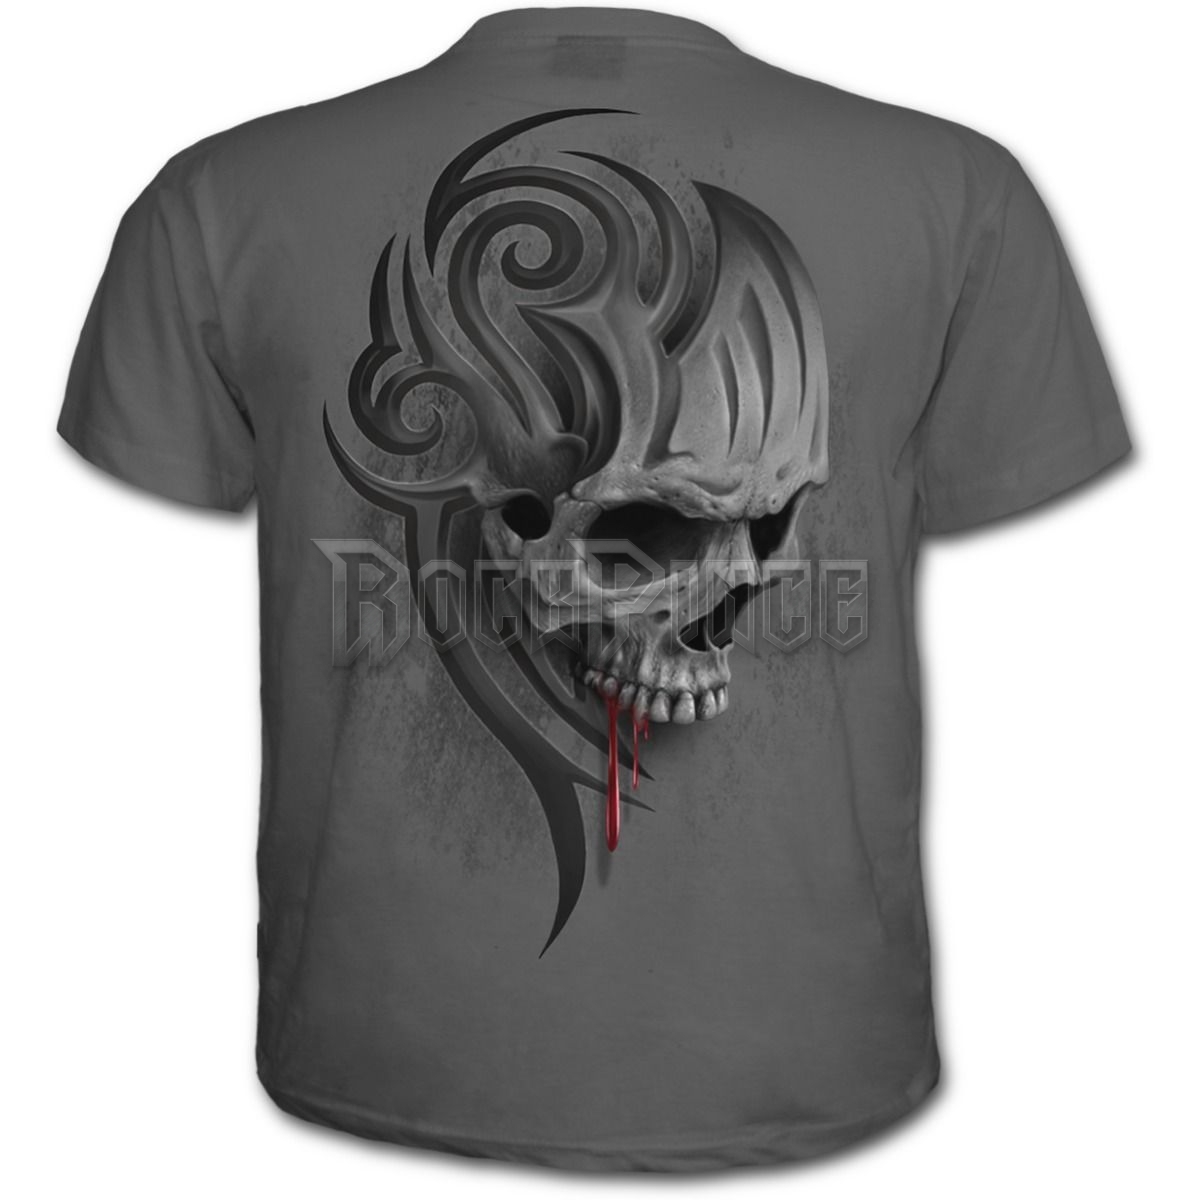 DEATH ROAR - T-Shirt Charcoal (Plain) - T151M115